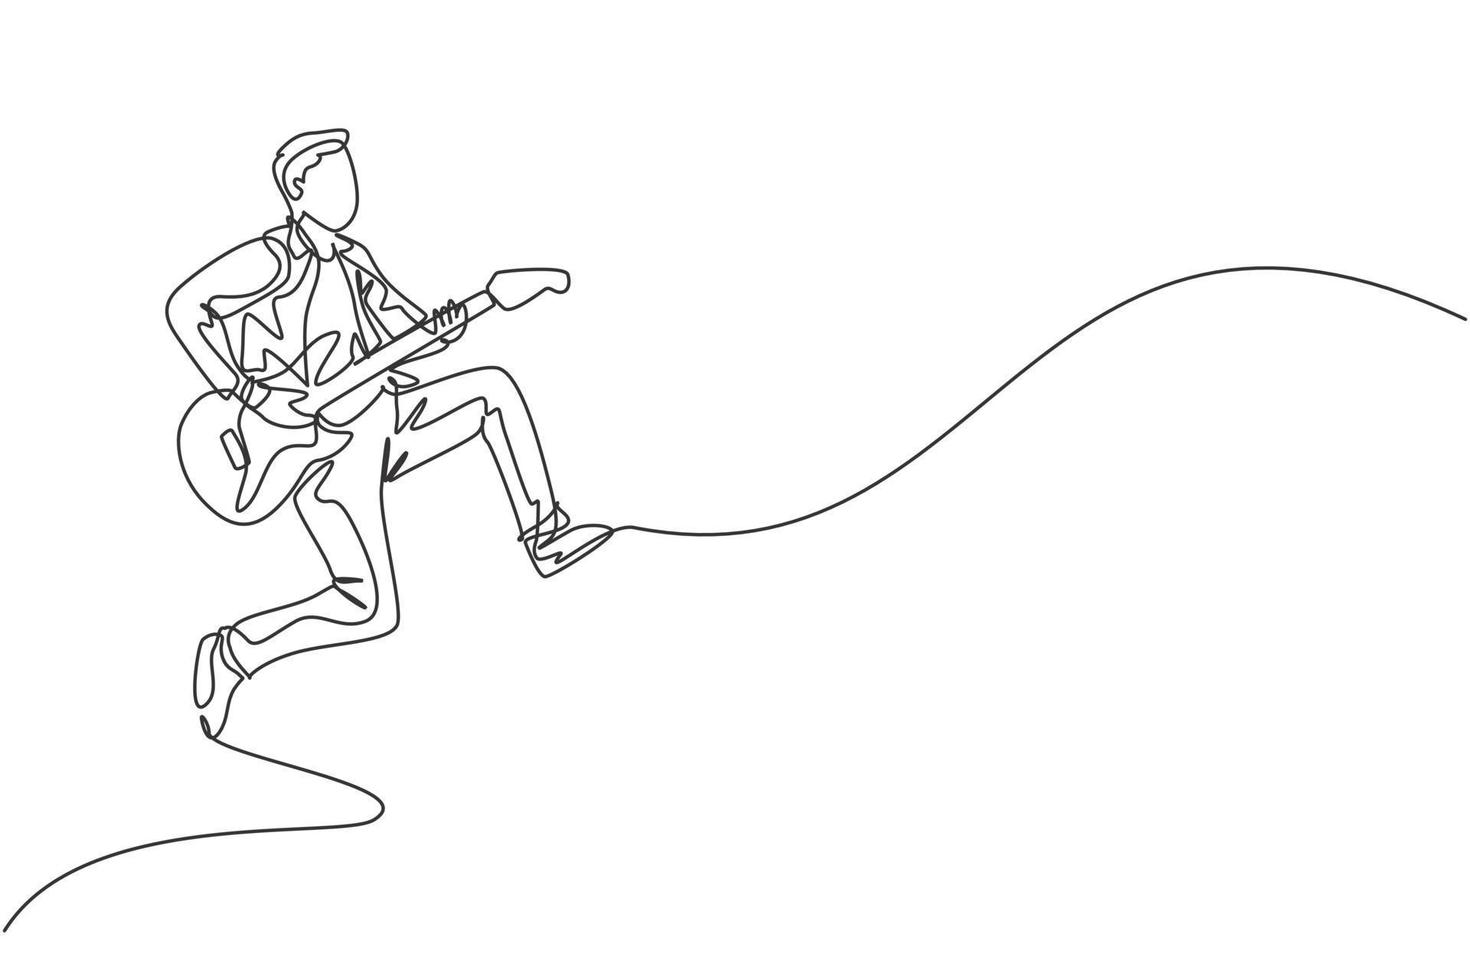 un disegno a tratteggio continuo di un giovane chitarrista maschio felice che salta mentre suona la chitarra elettrica sul palco di un concerto musicale. musicista artista performance concetto linea singola disegnare disegno vettoriale illustrazione